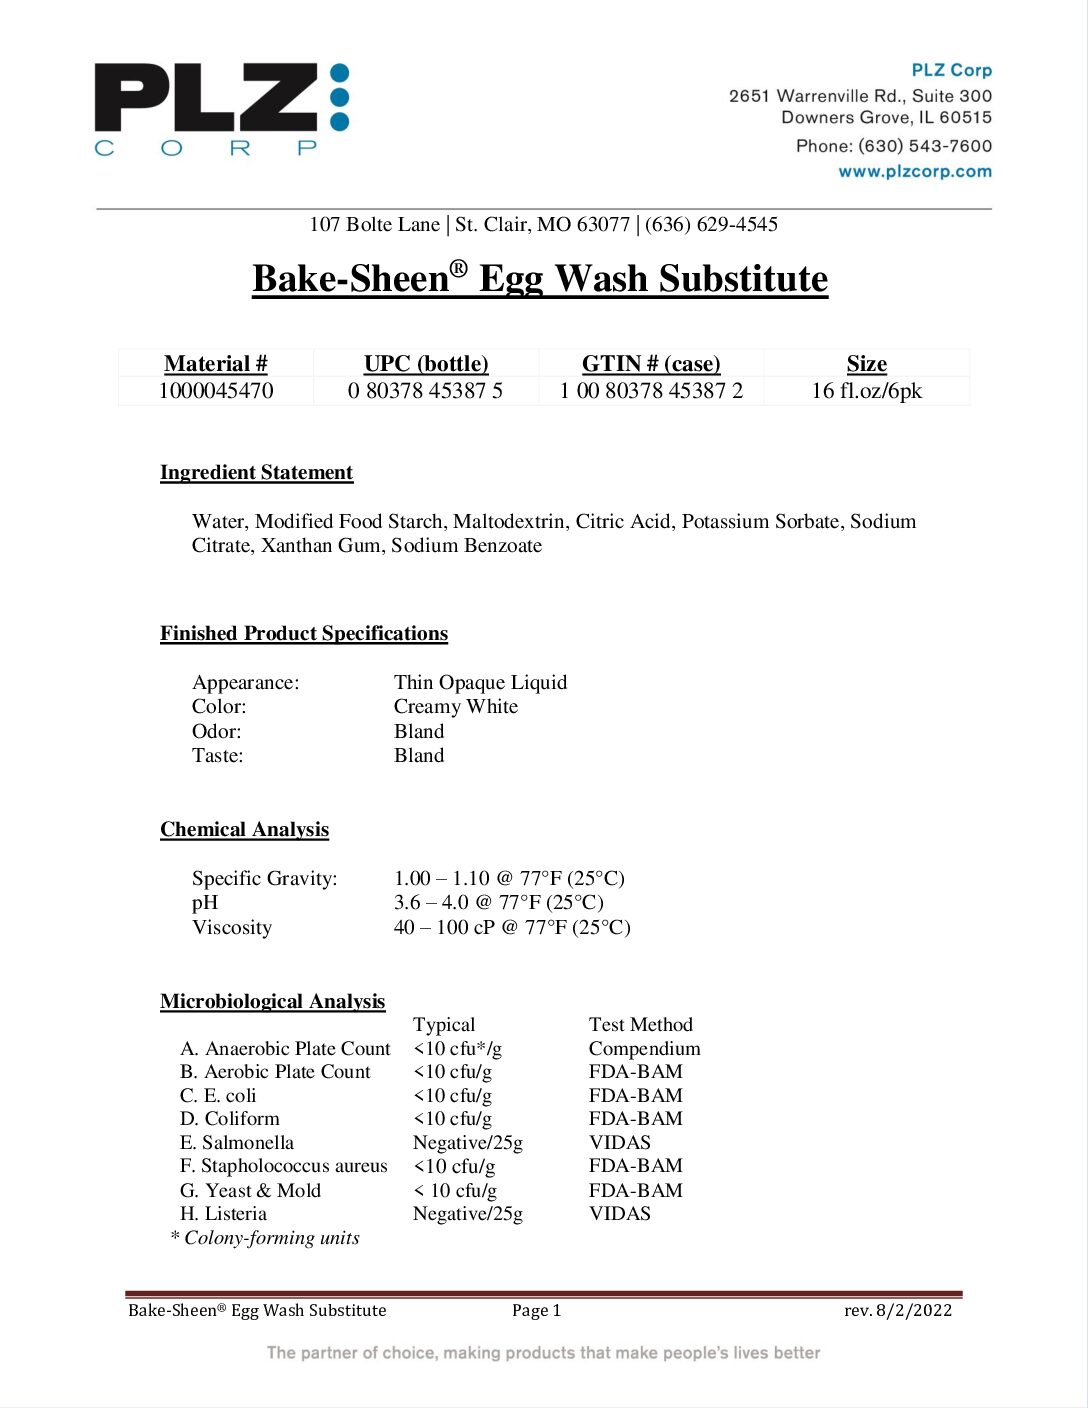 PDS – 1000045470 Bake-Sheen Egg Wash Substitute (16oz)